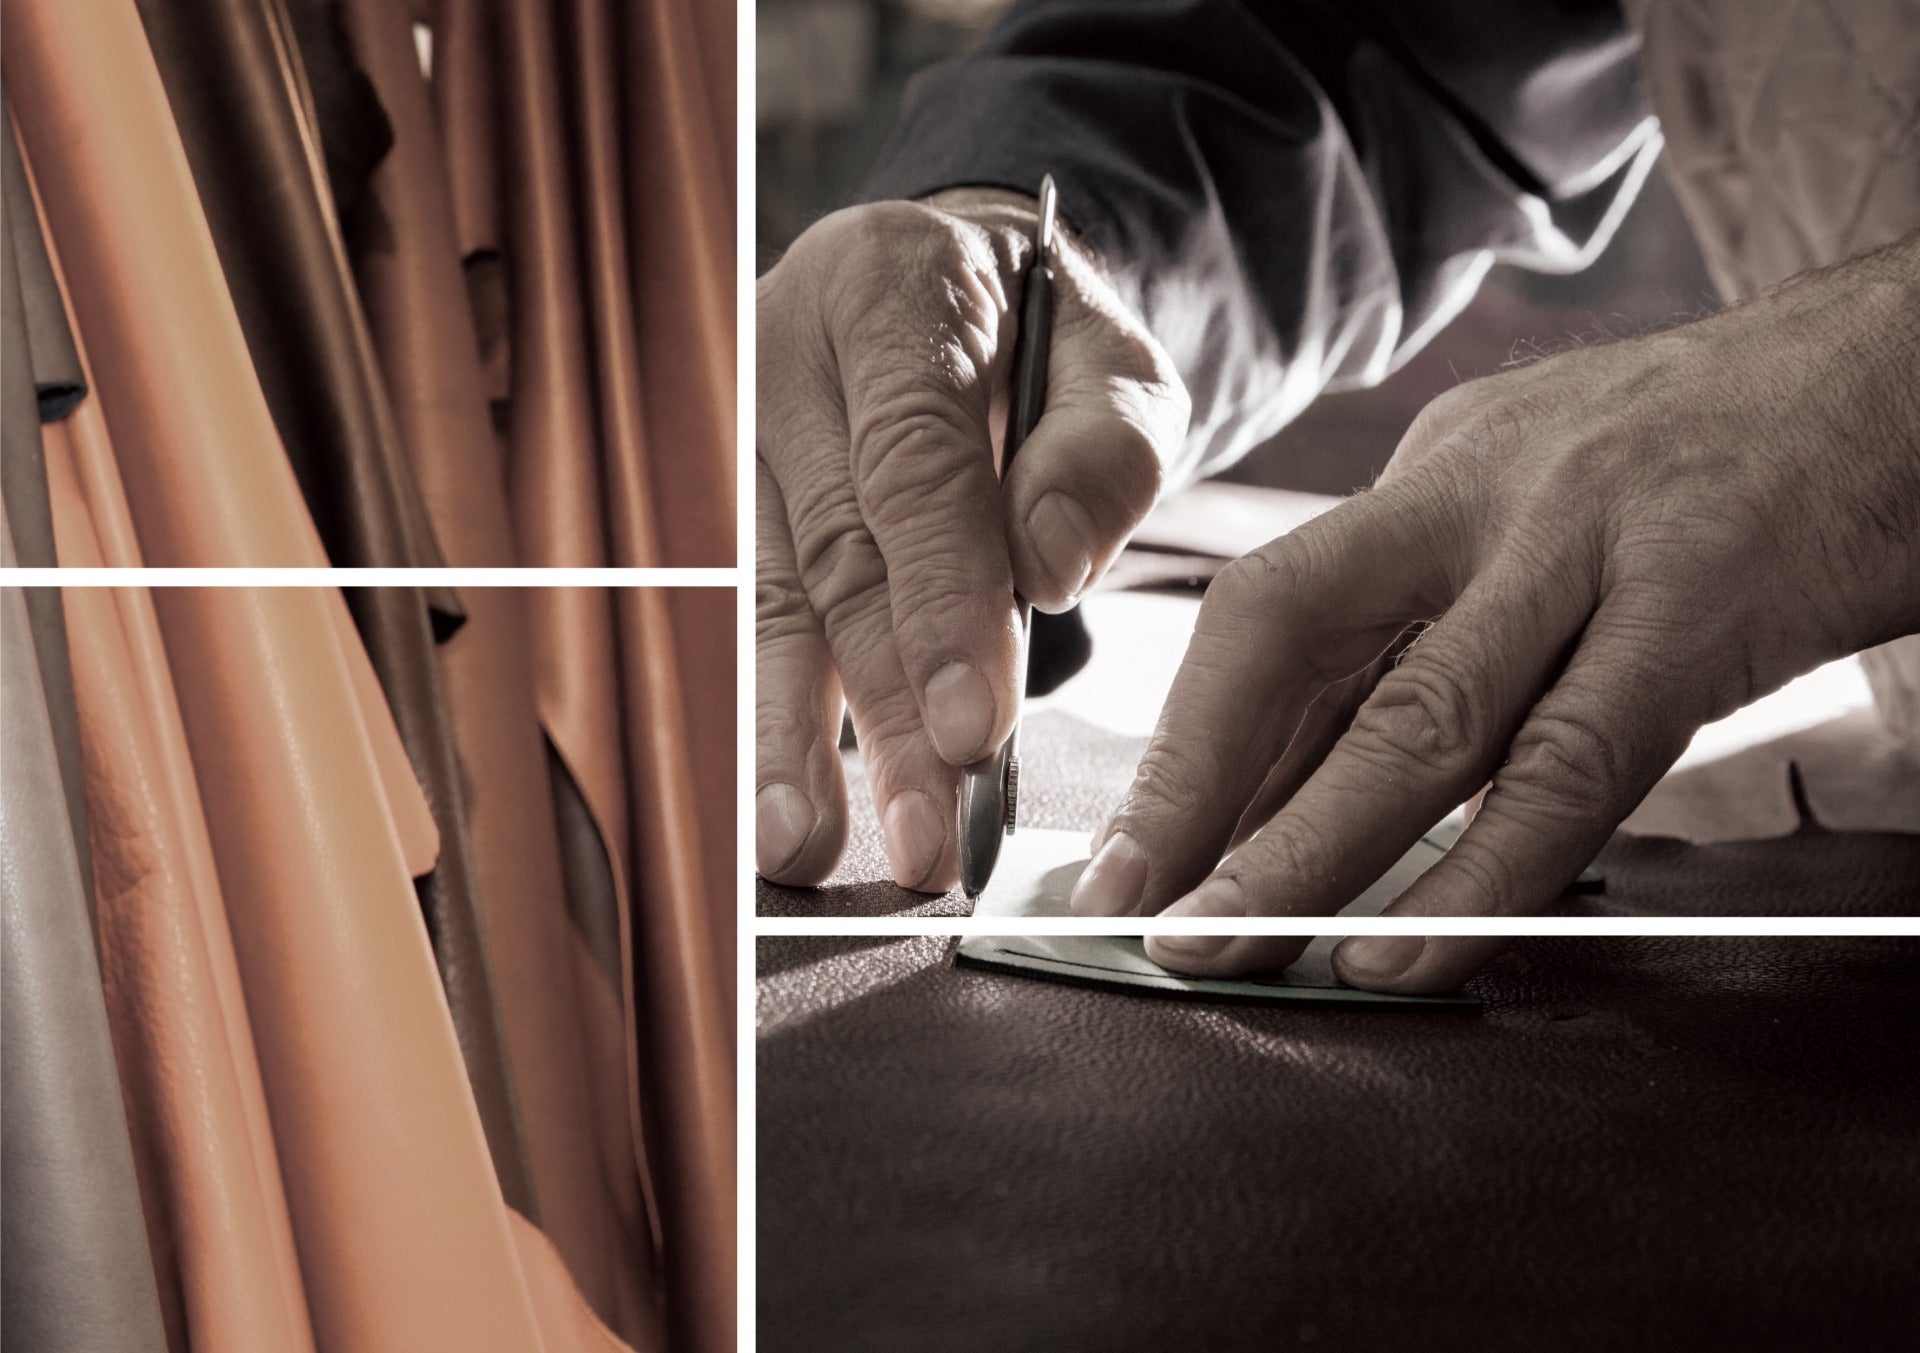 Řemeslník pečlivě opracovává celokožený kus v tradiční kožedělné dílně.